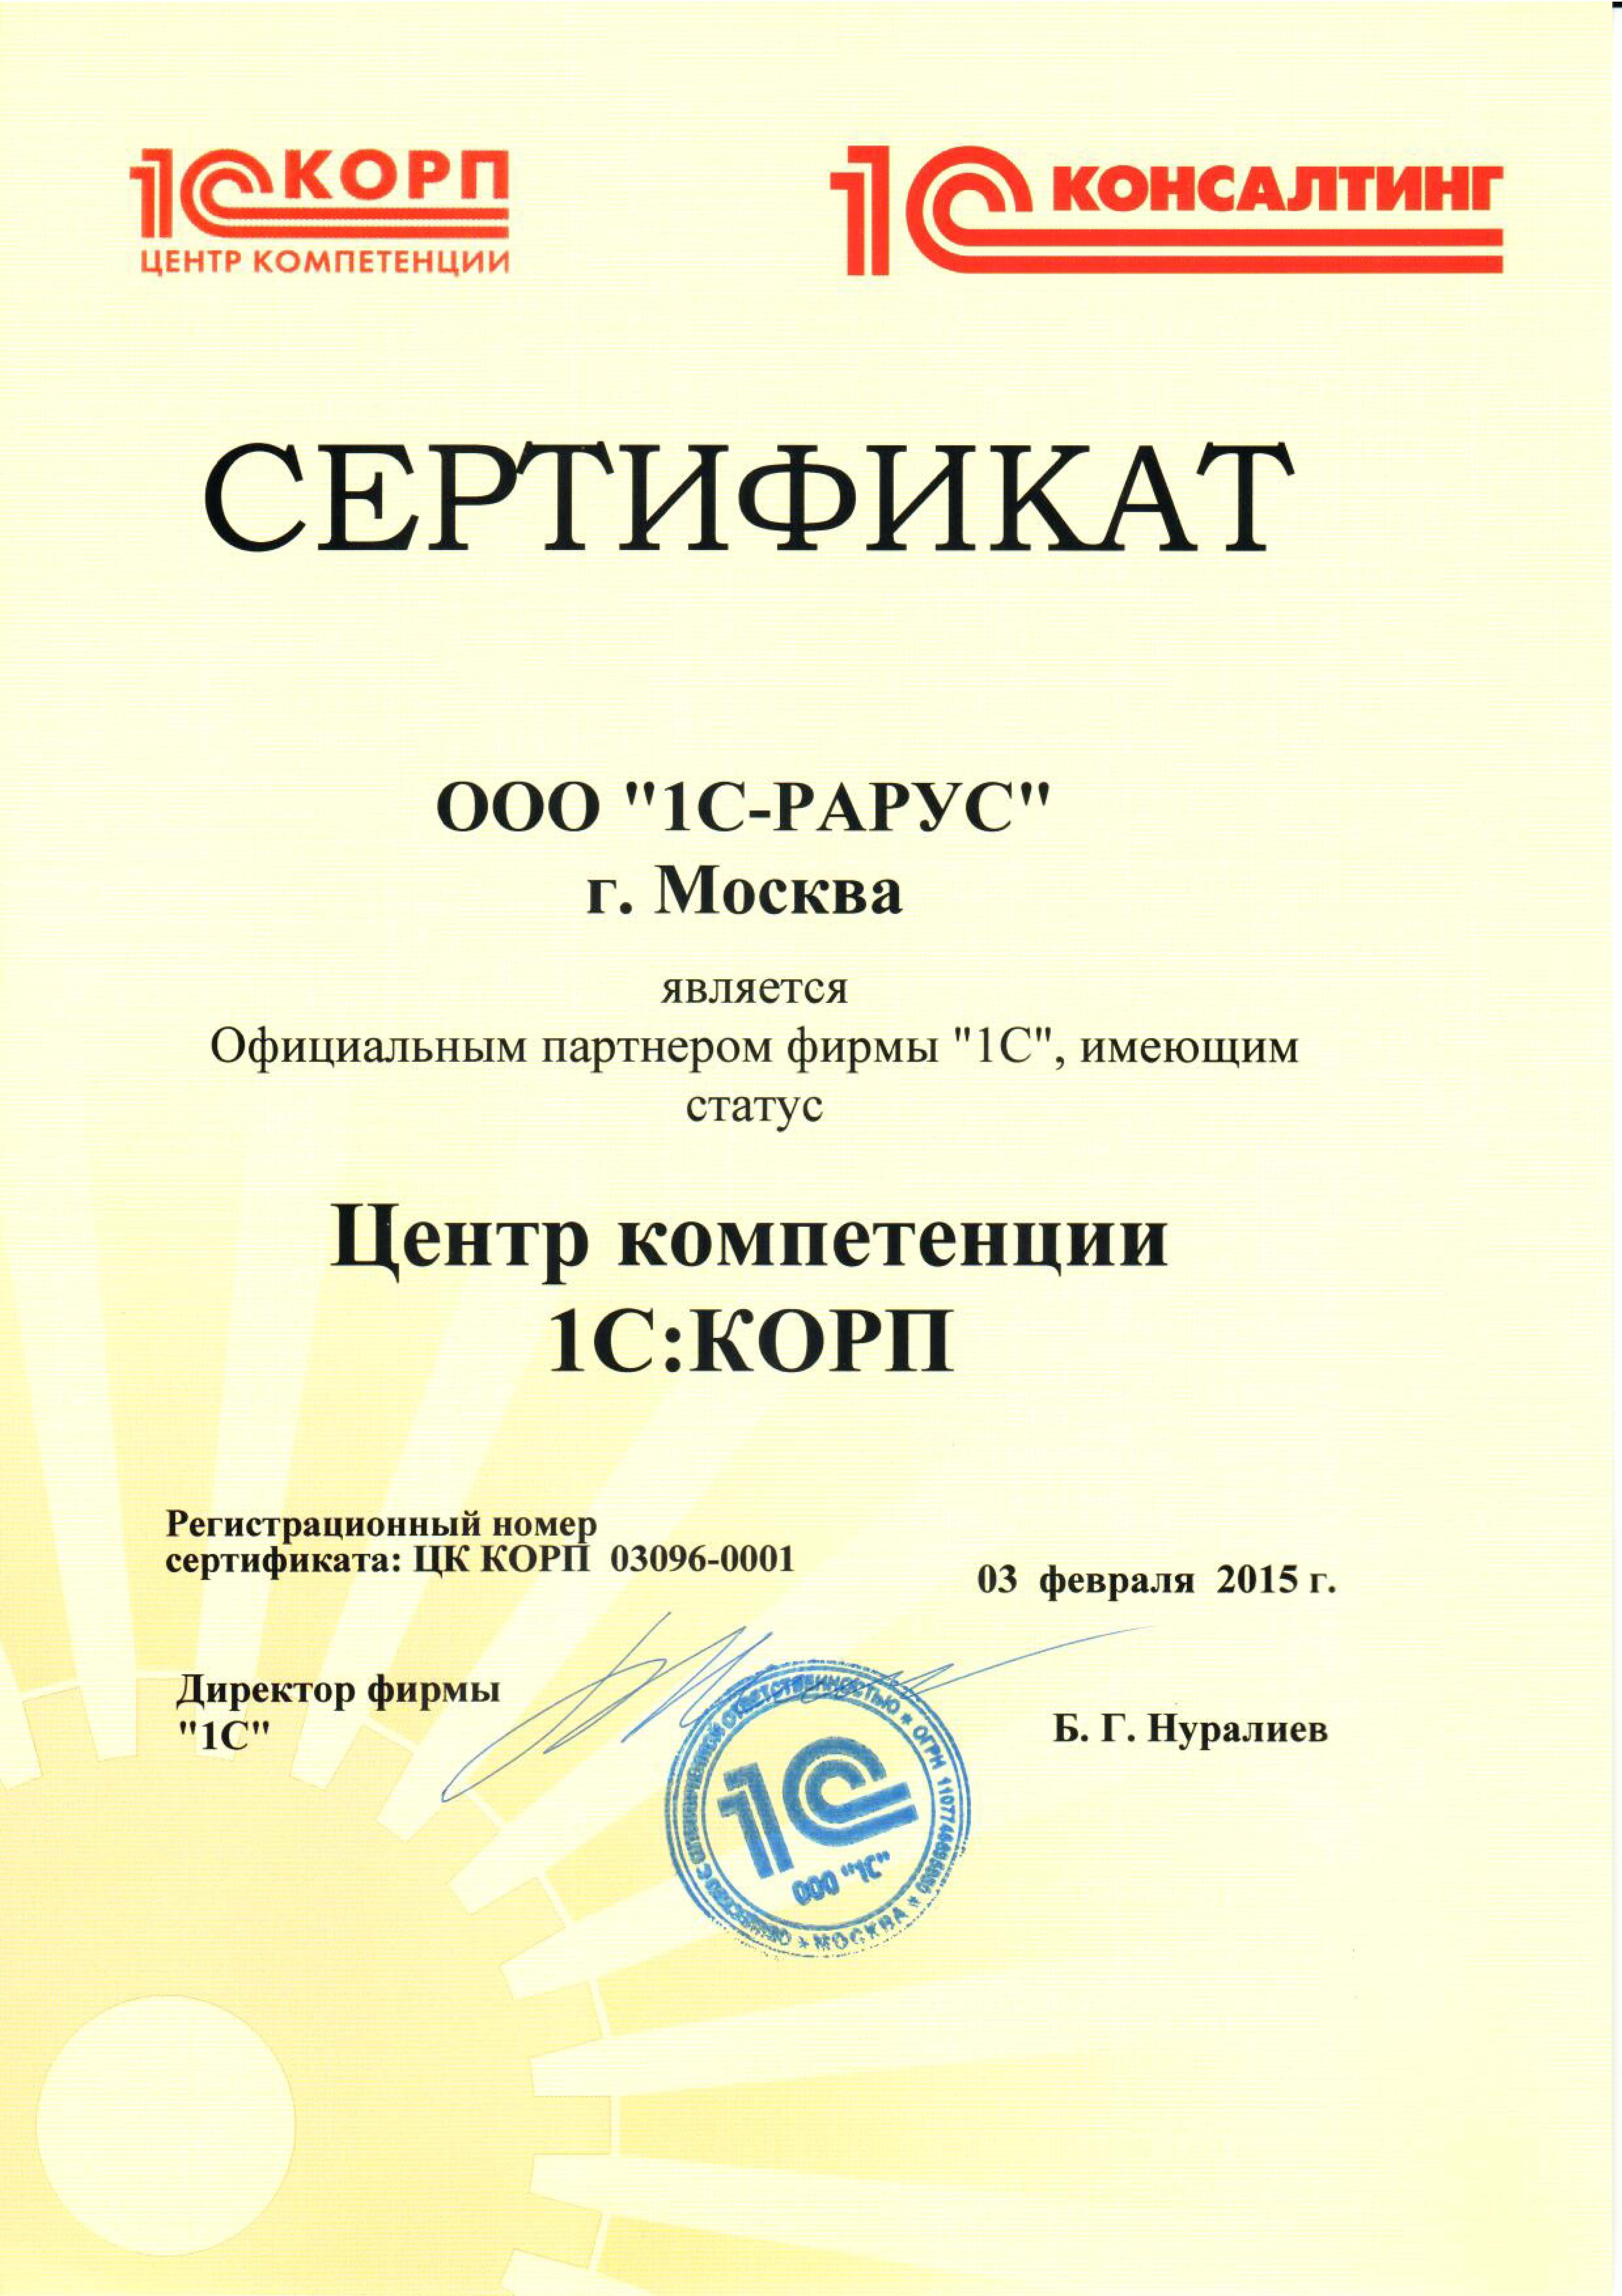 Сертификат 1С «Центр компетенции 1С:КОРП»